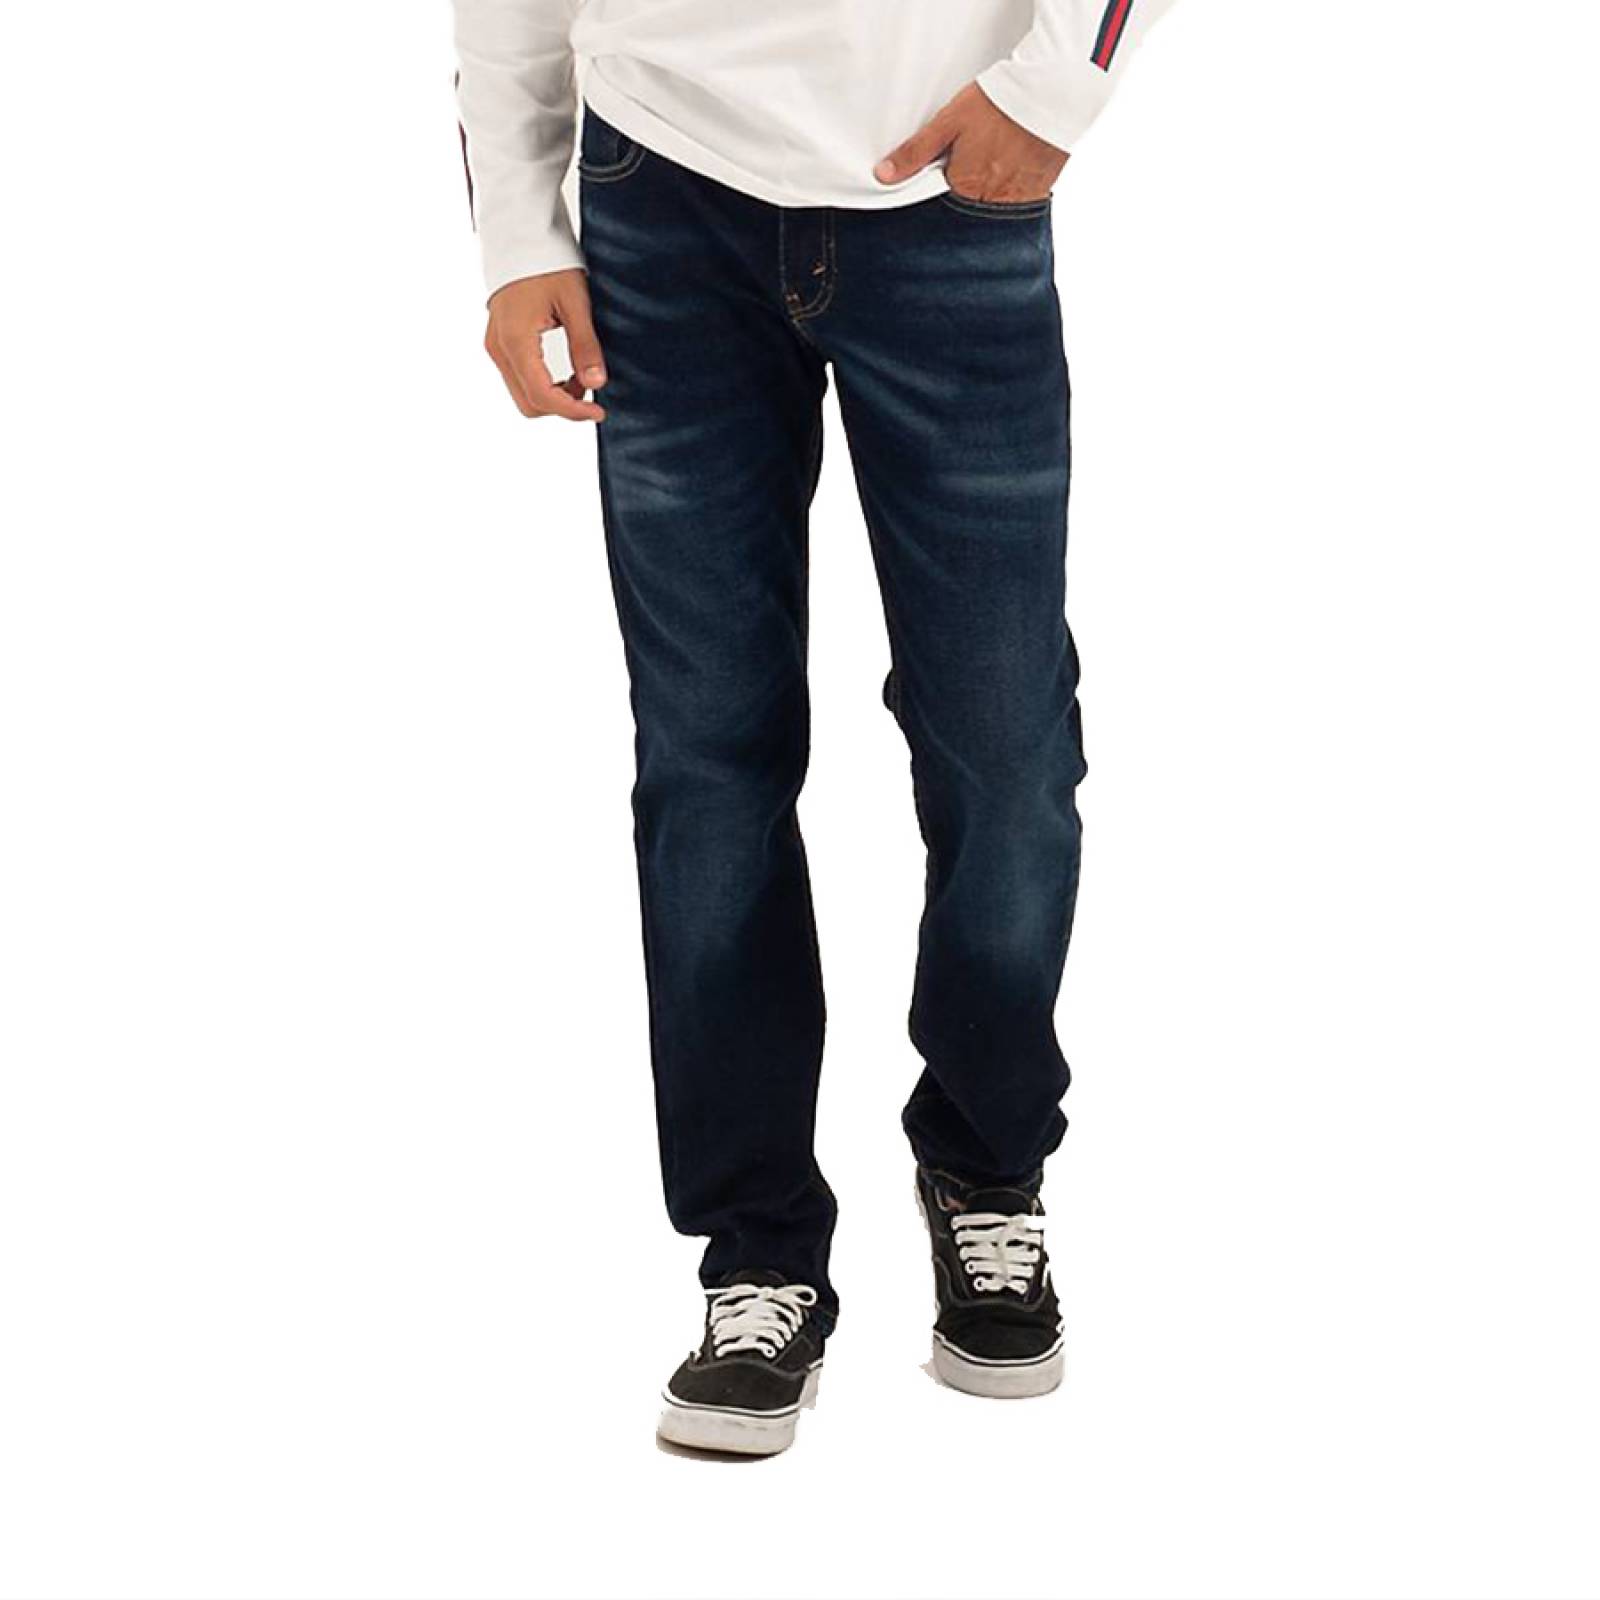 Jeans Levis 511 Slim Fit 045113503